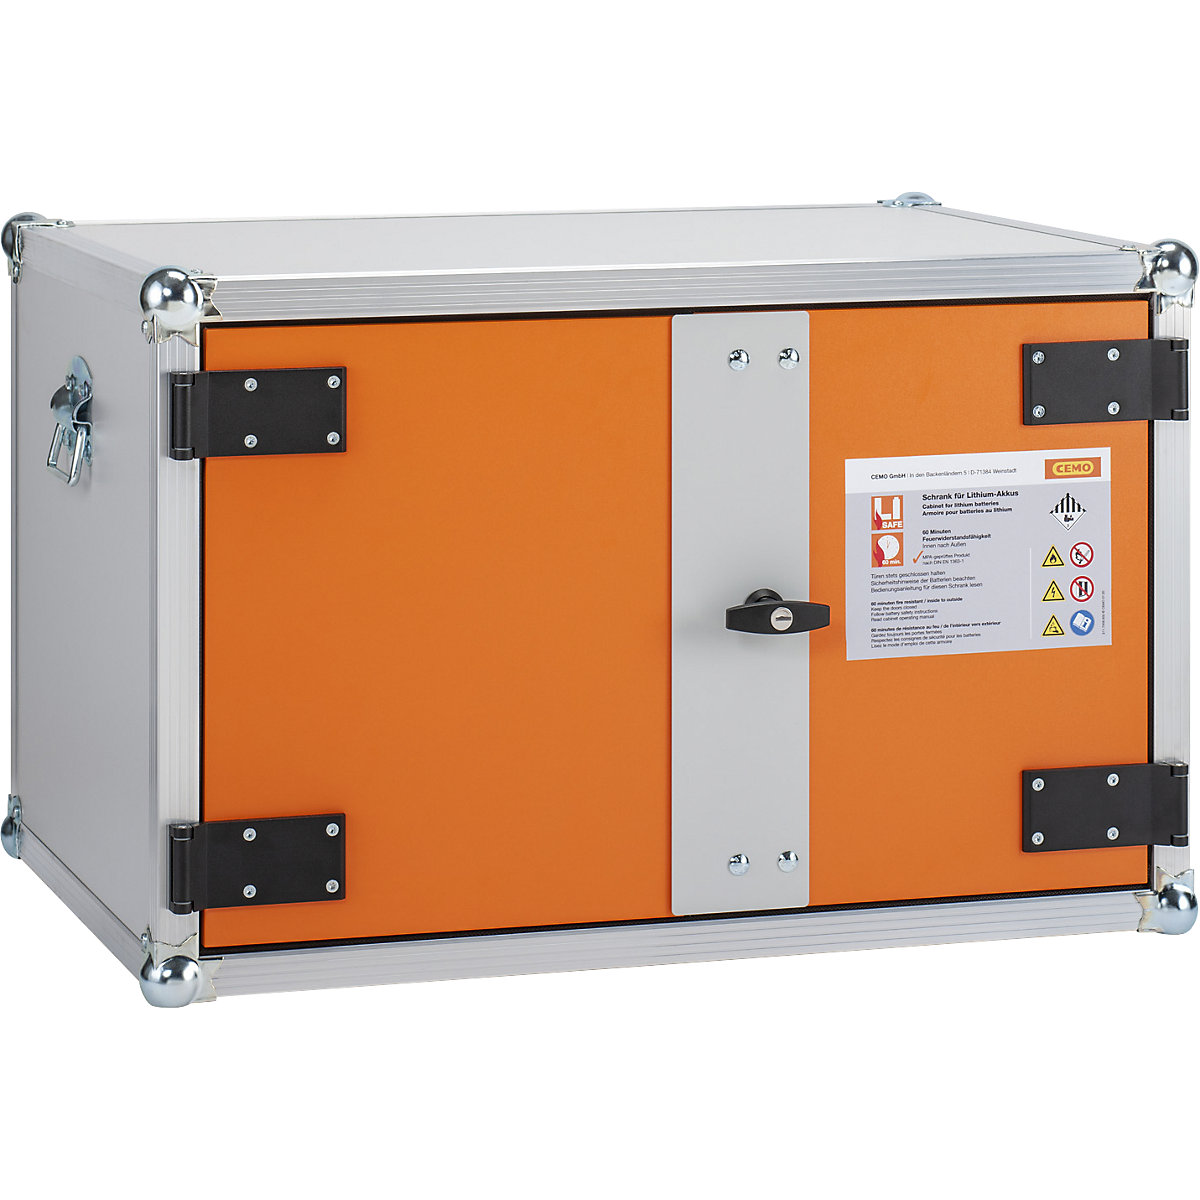 PREMIUM biztonsági akkumulátortöltő szekrény - CEMO